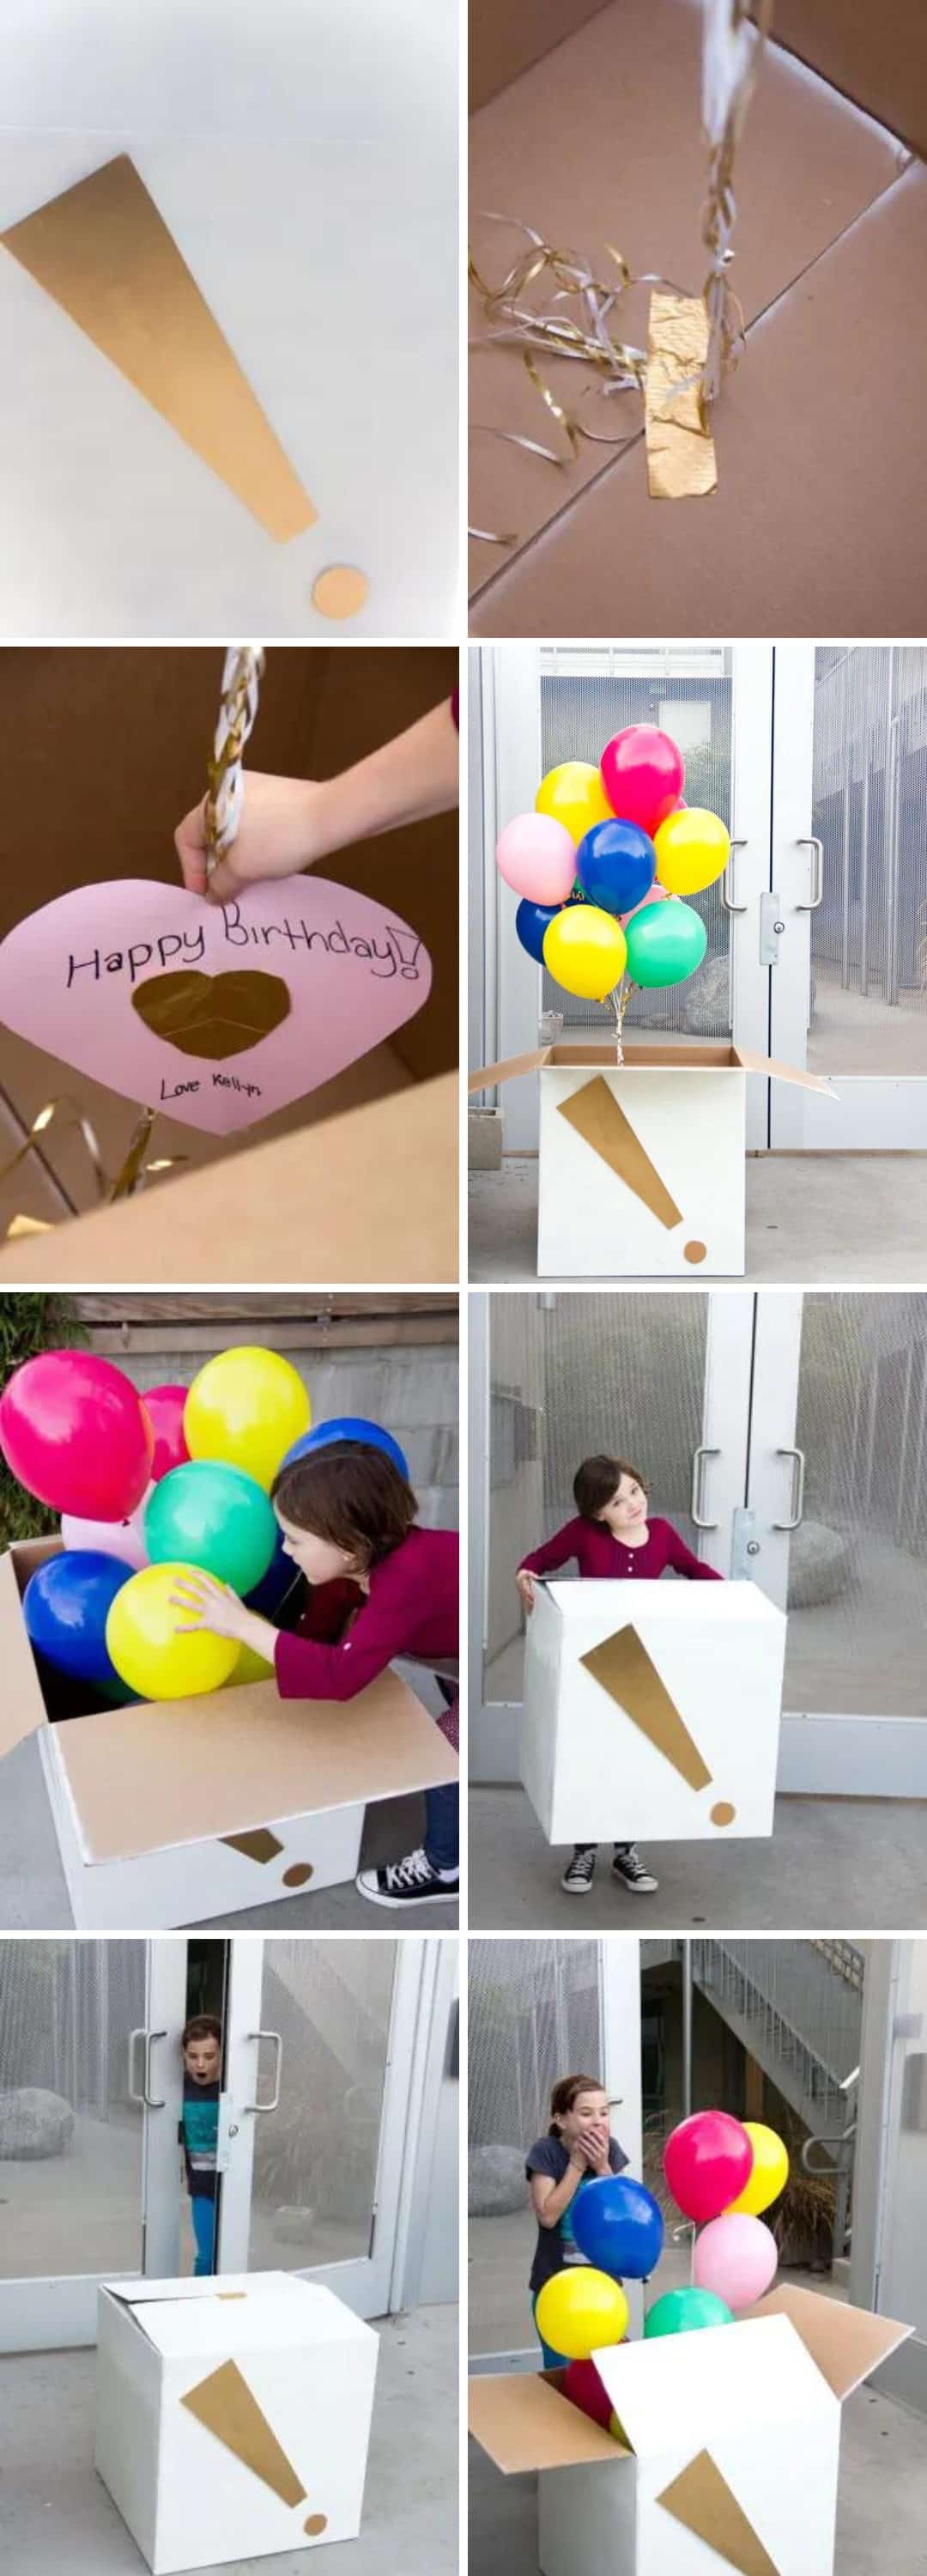 Как сделать фонтан или композицию из шаров своими руками